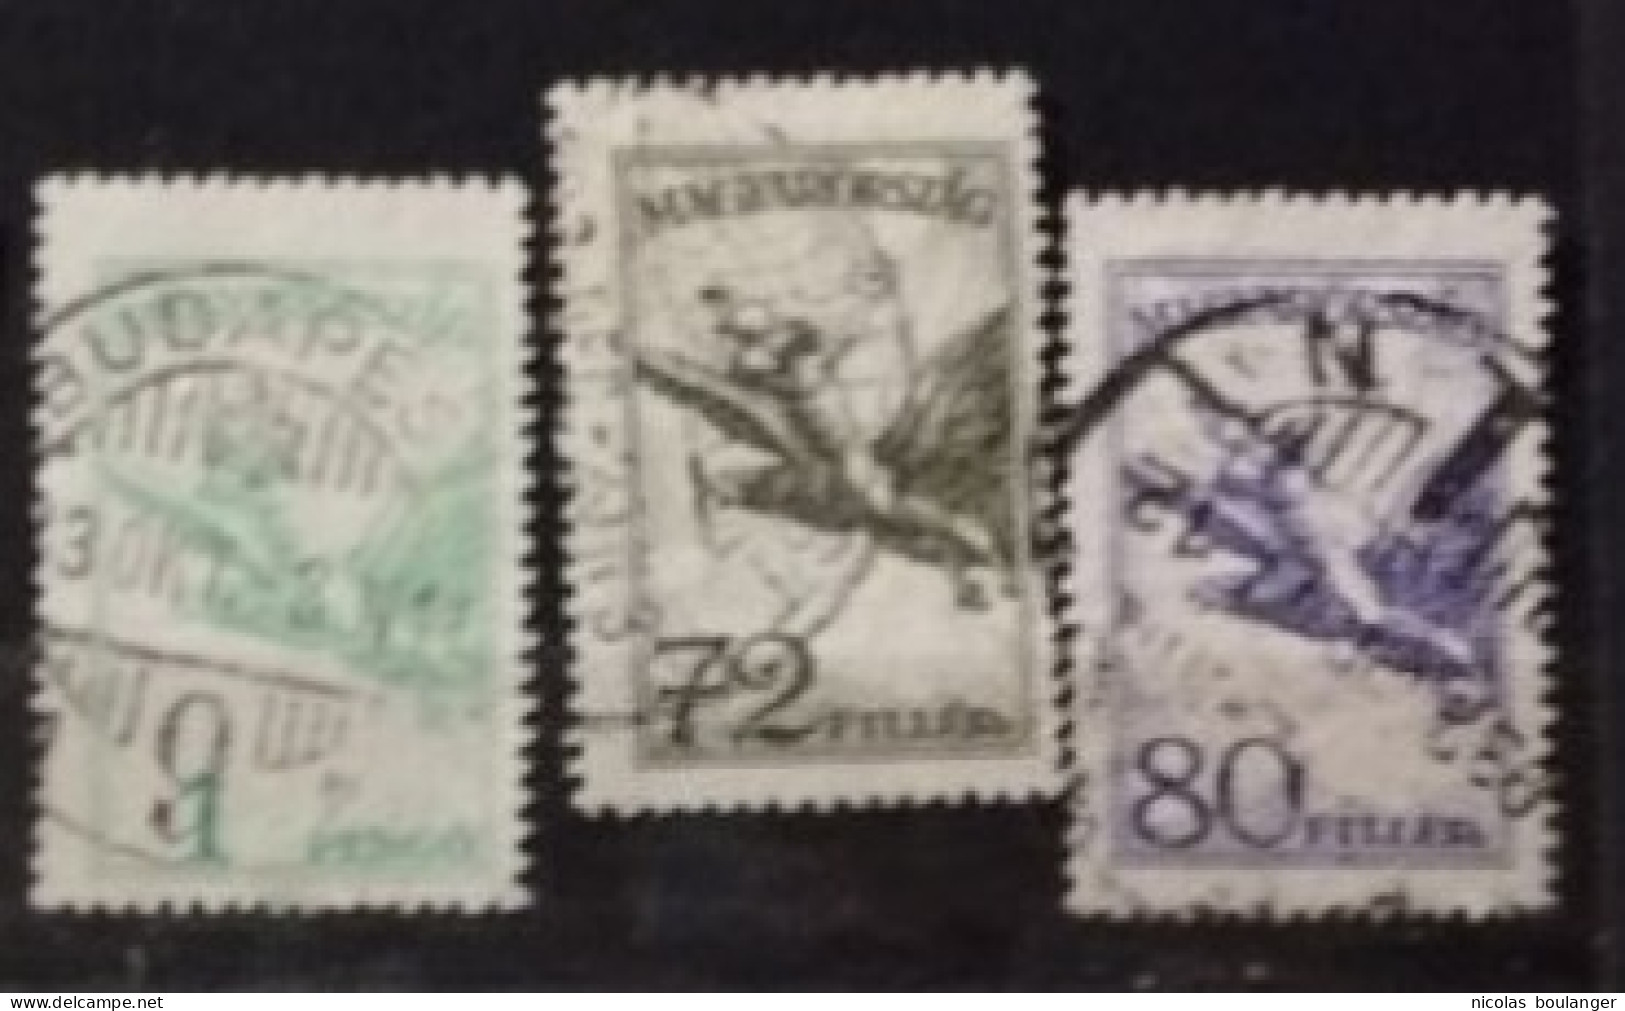 Hongrie 1927-1930 / Yvert Poste Aérienne N°19-21 / Used - Used Stamps